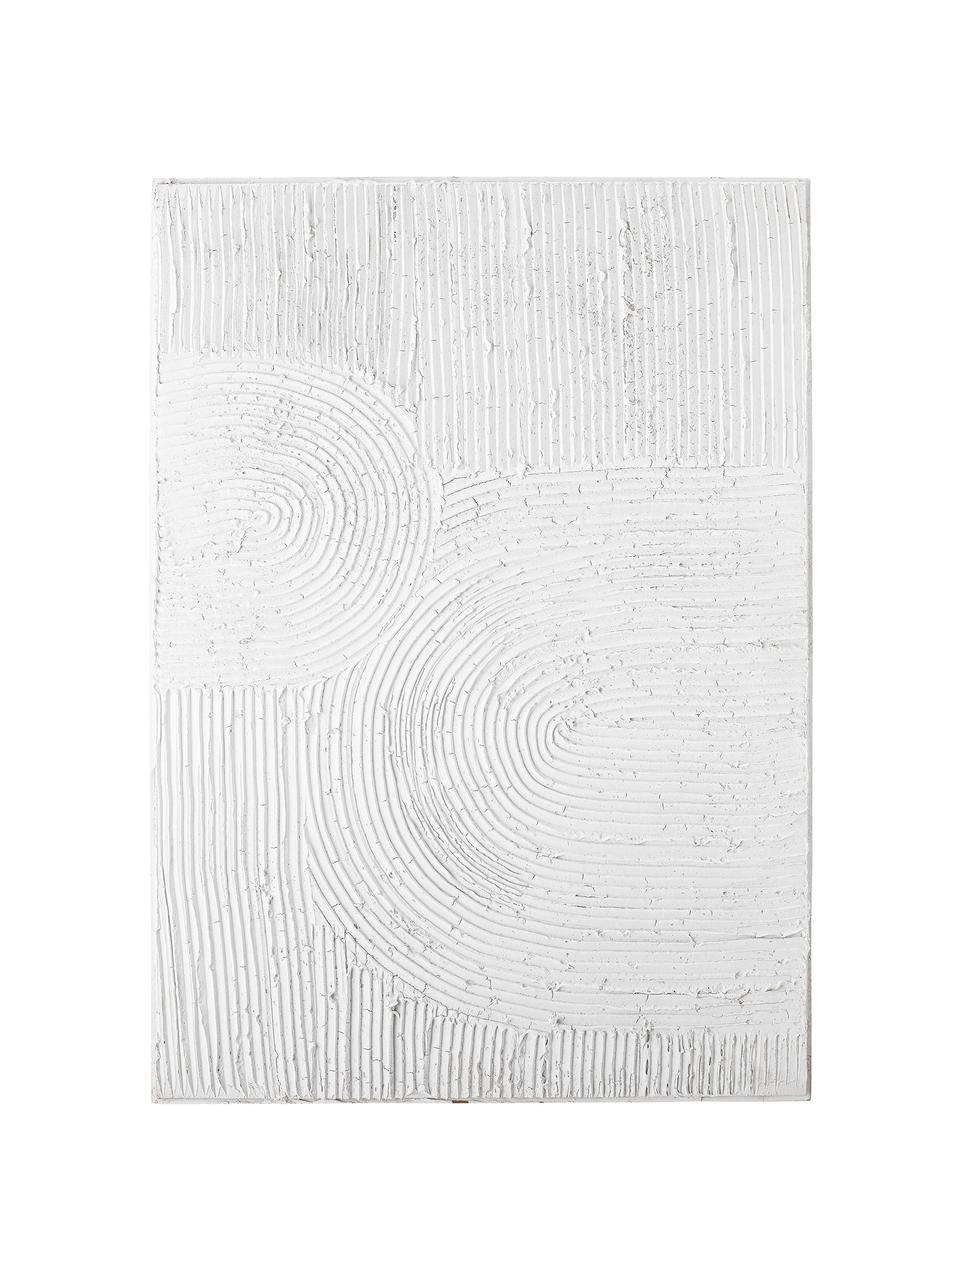 Dekoracja ścienna ze strukturalną powierzchnią Tabine, Biały, S 50 x W 70 cm